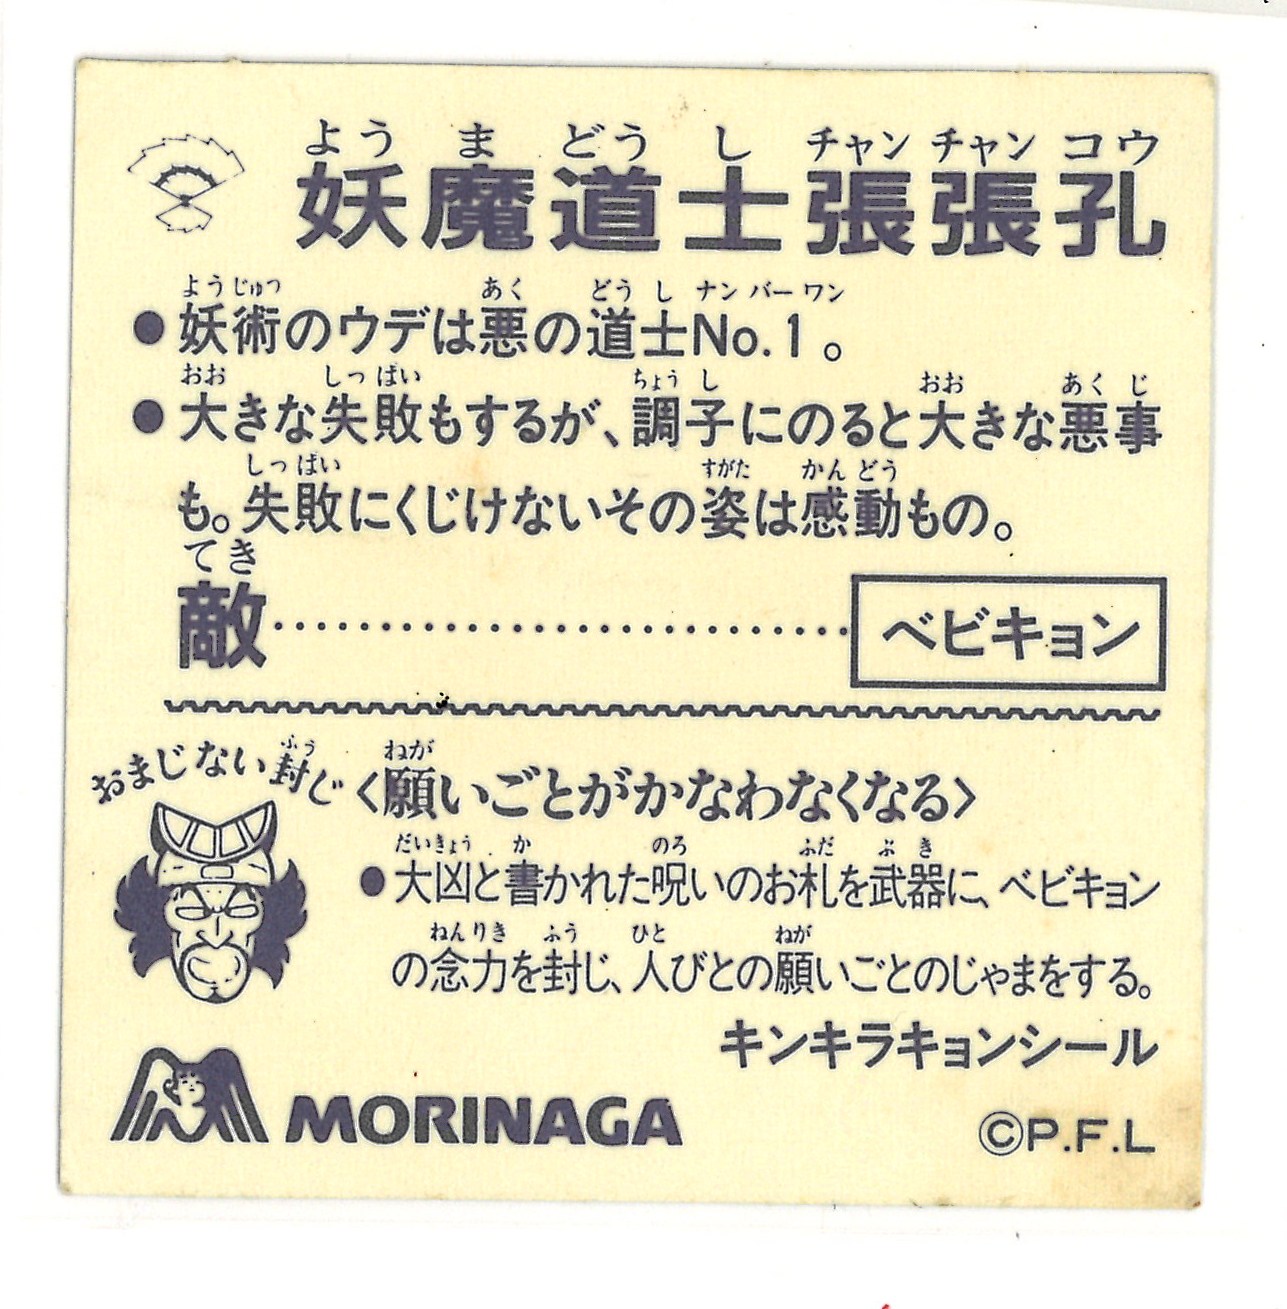 妖魔 Taoist 張張 Hole Morinaga キンキラキョン Sticker Minor Sticker